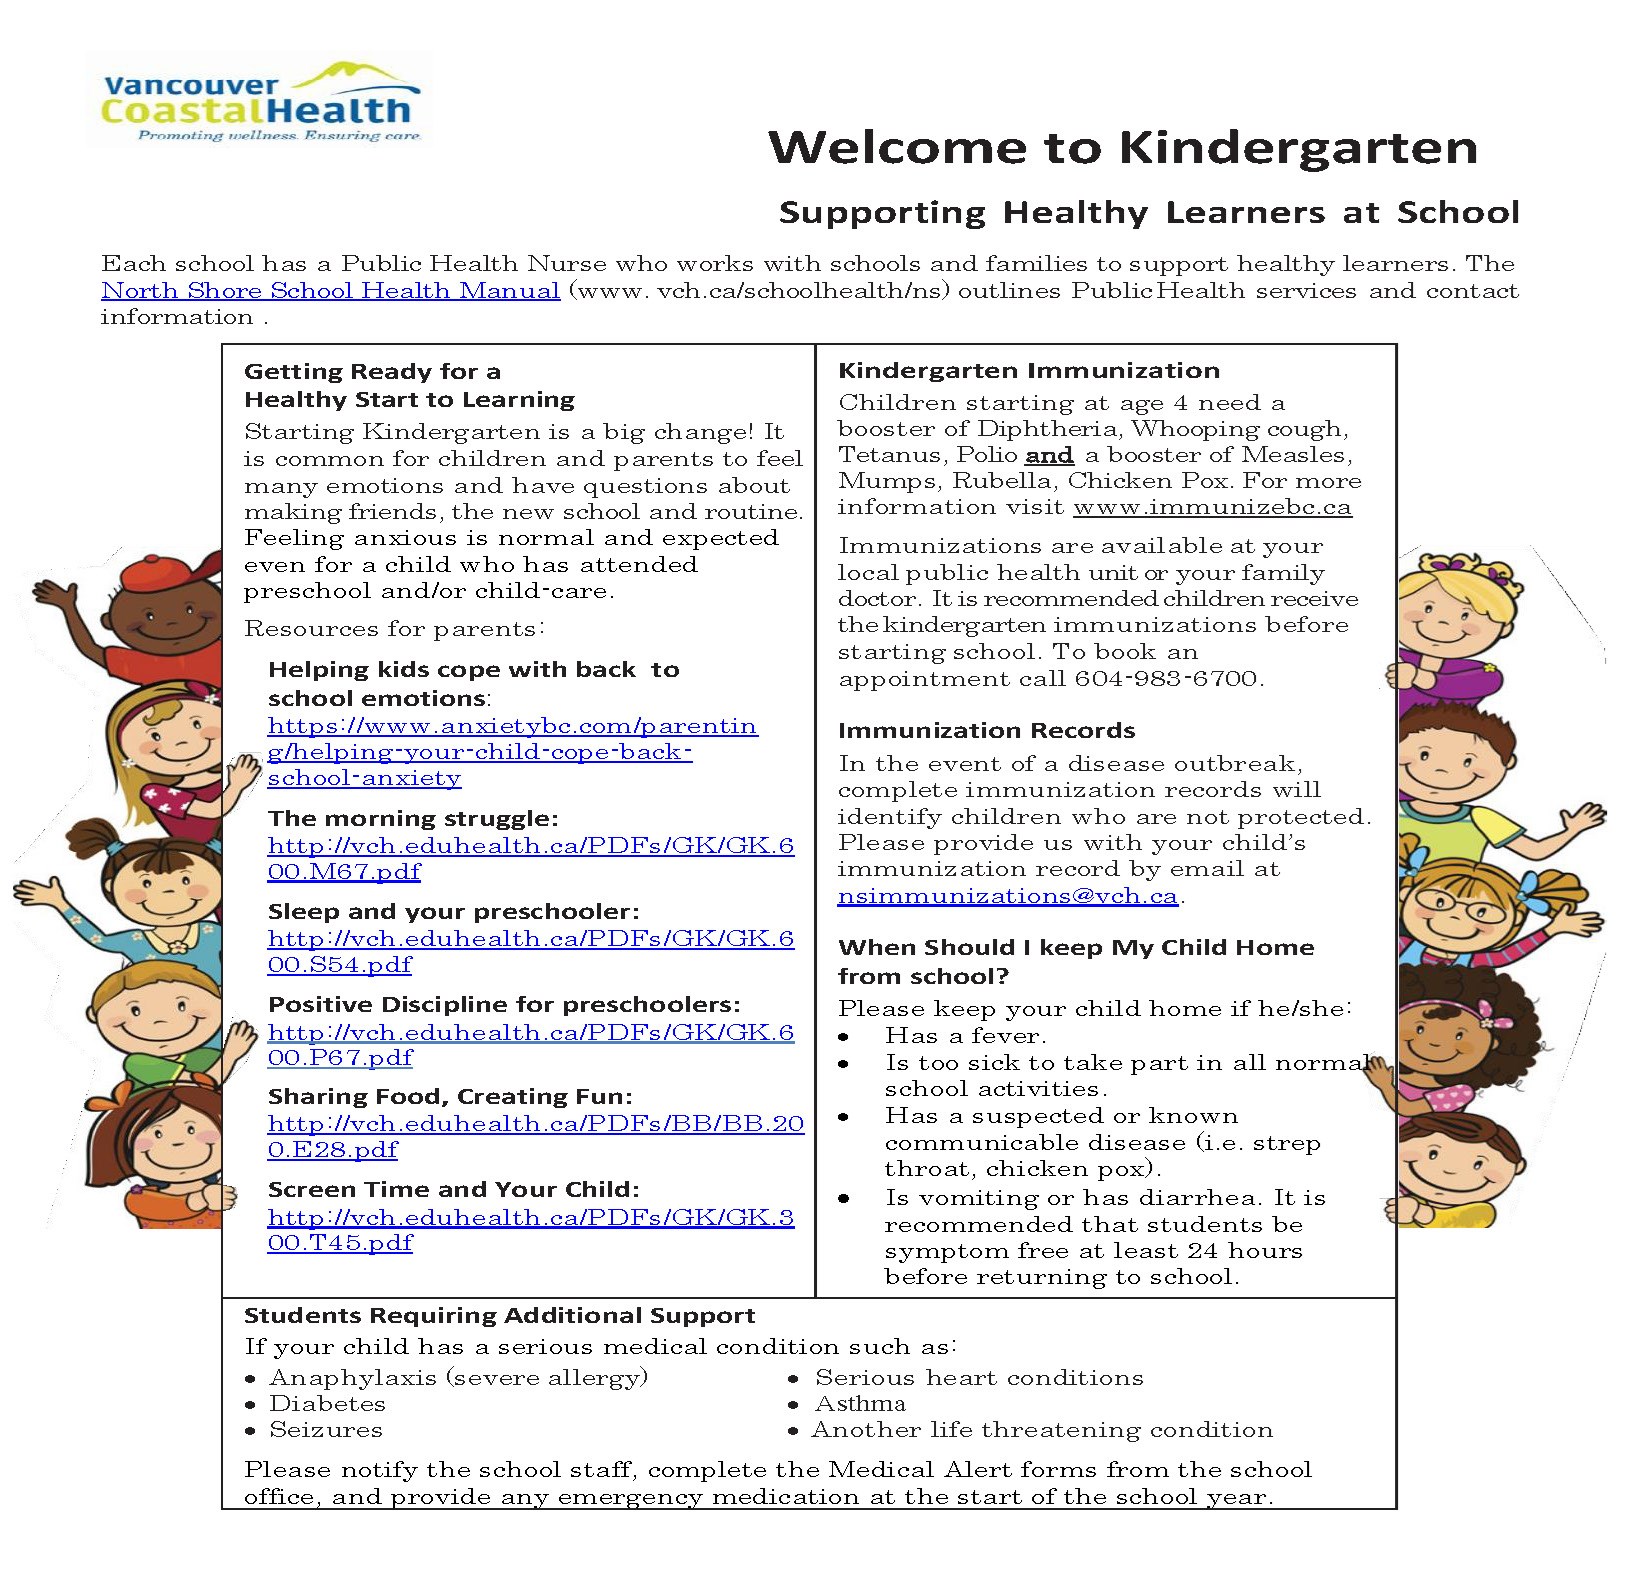 Welcome to Kindergarten Handout 2019.jpg